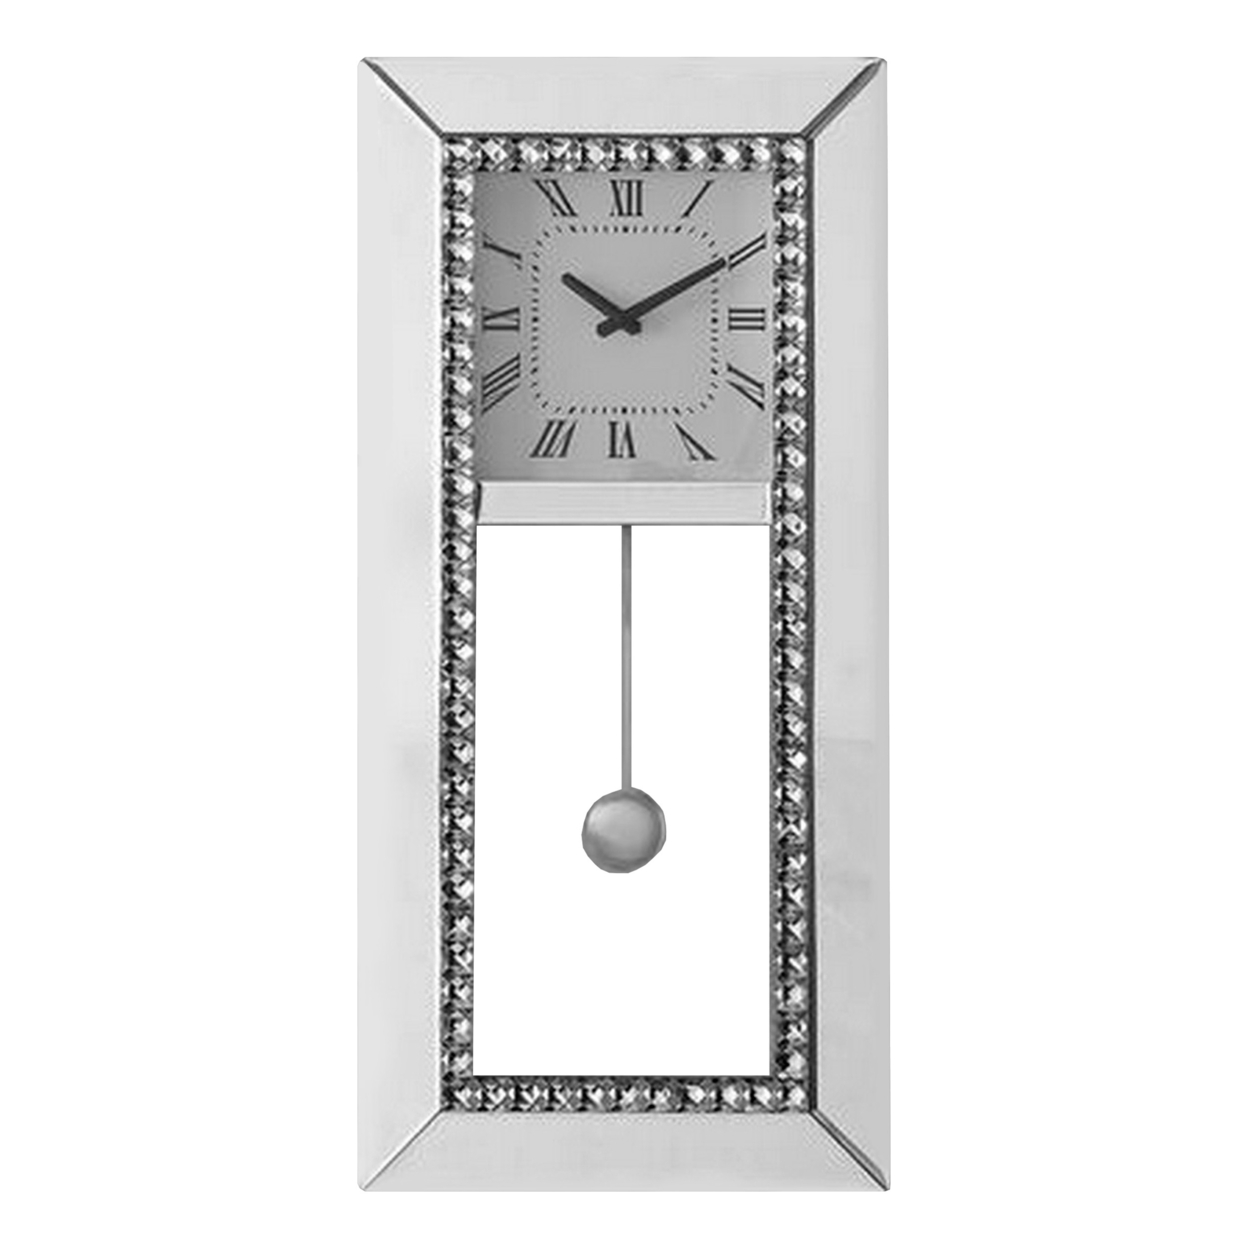 Noe 30 Inch Wall Clock, Crystal Diamond Inlaid Trim, Pendulum, White- Saltoro Sherpi